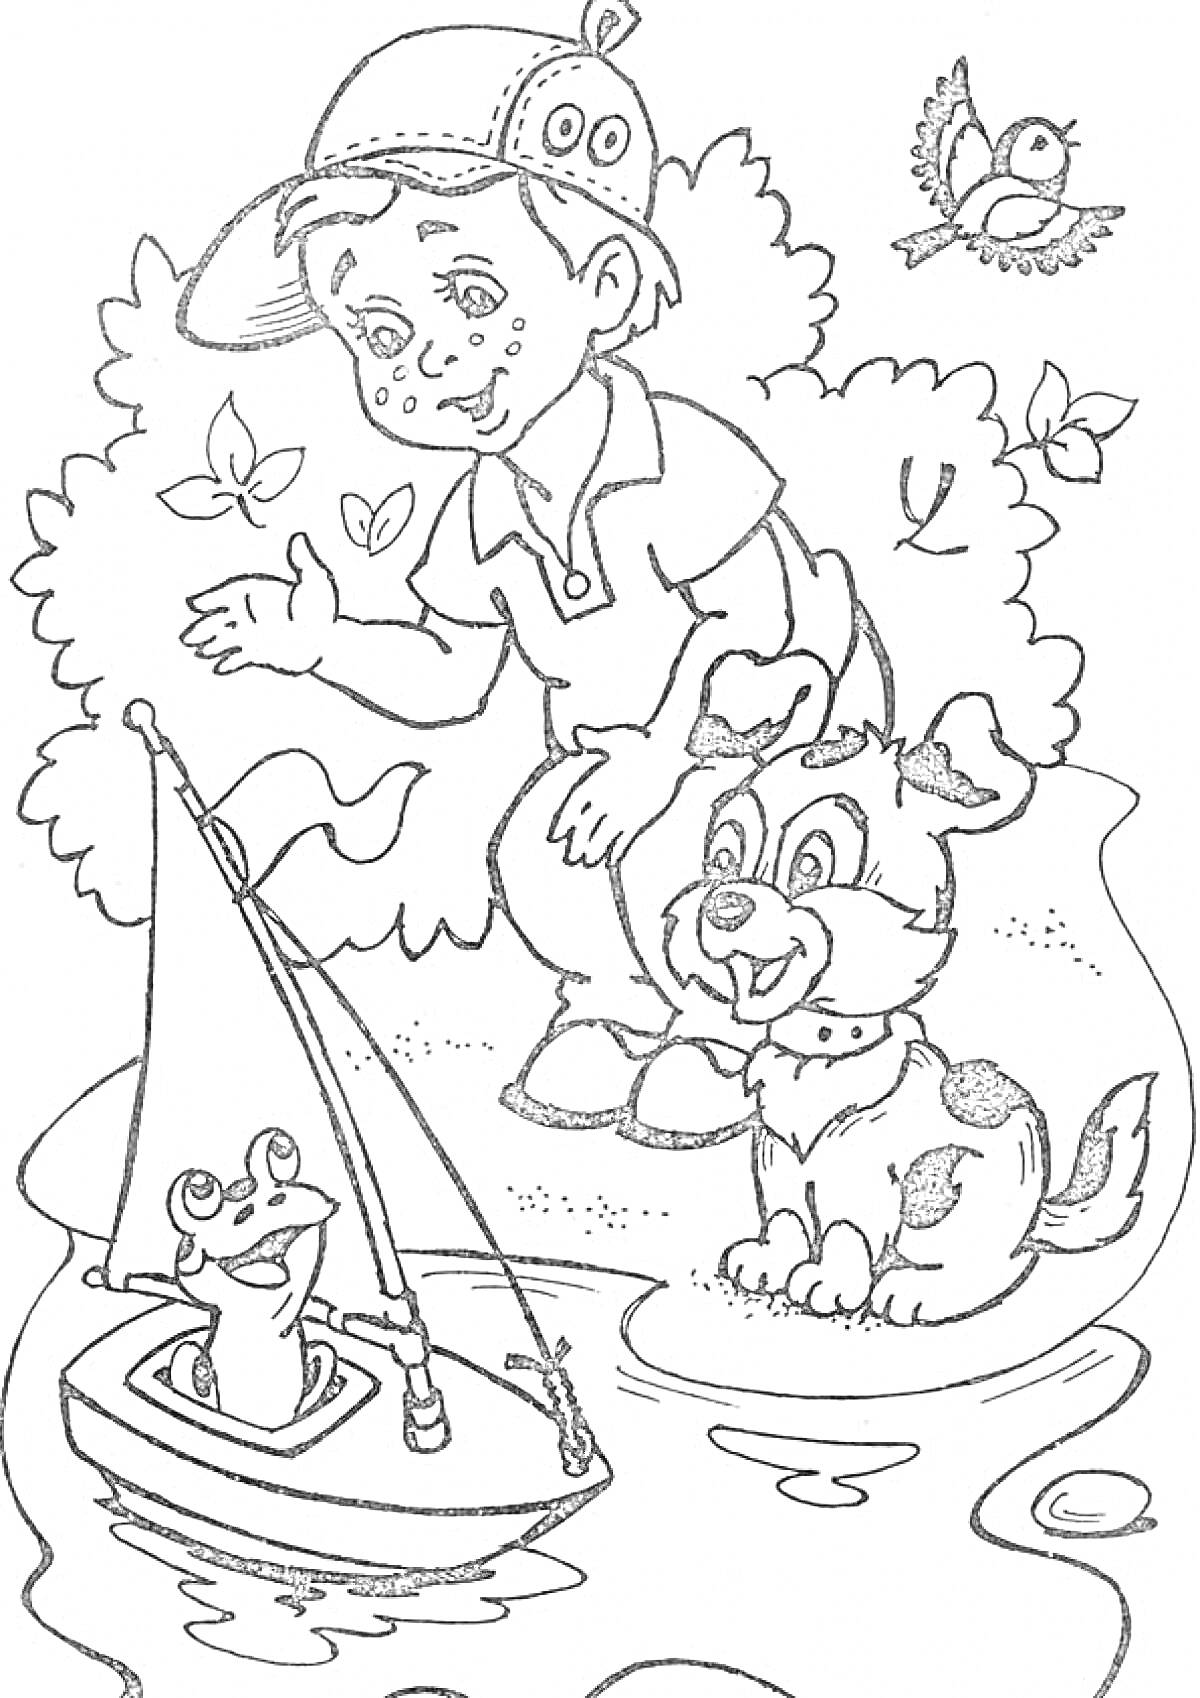 Раскраска Мальчик, собака, лягушка на игрушечной лодке у пруда в летний день